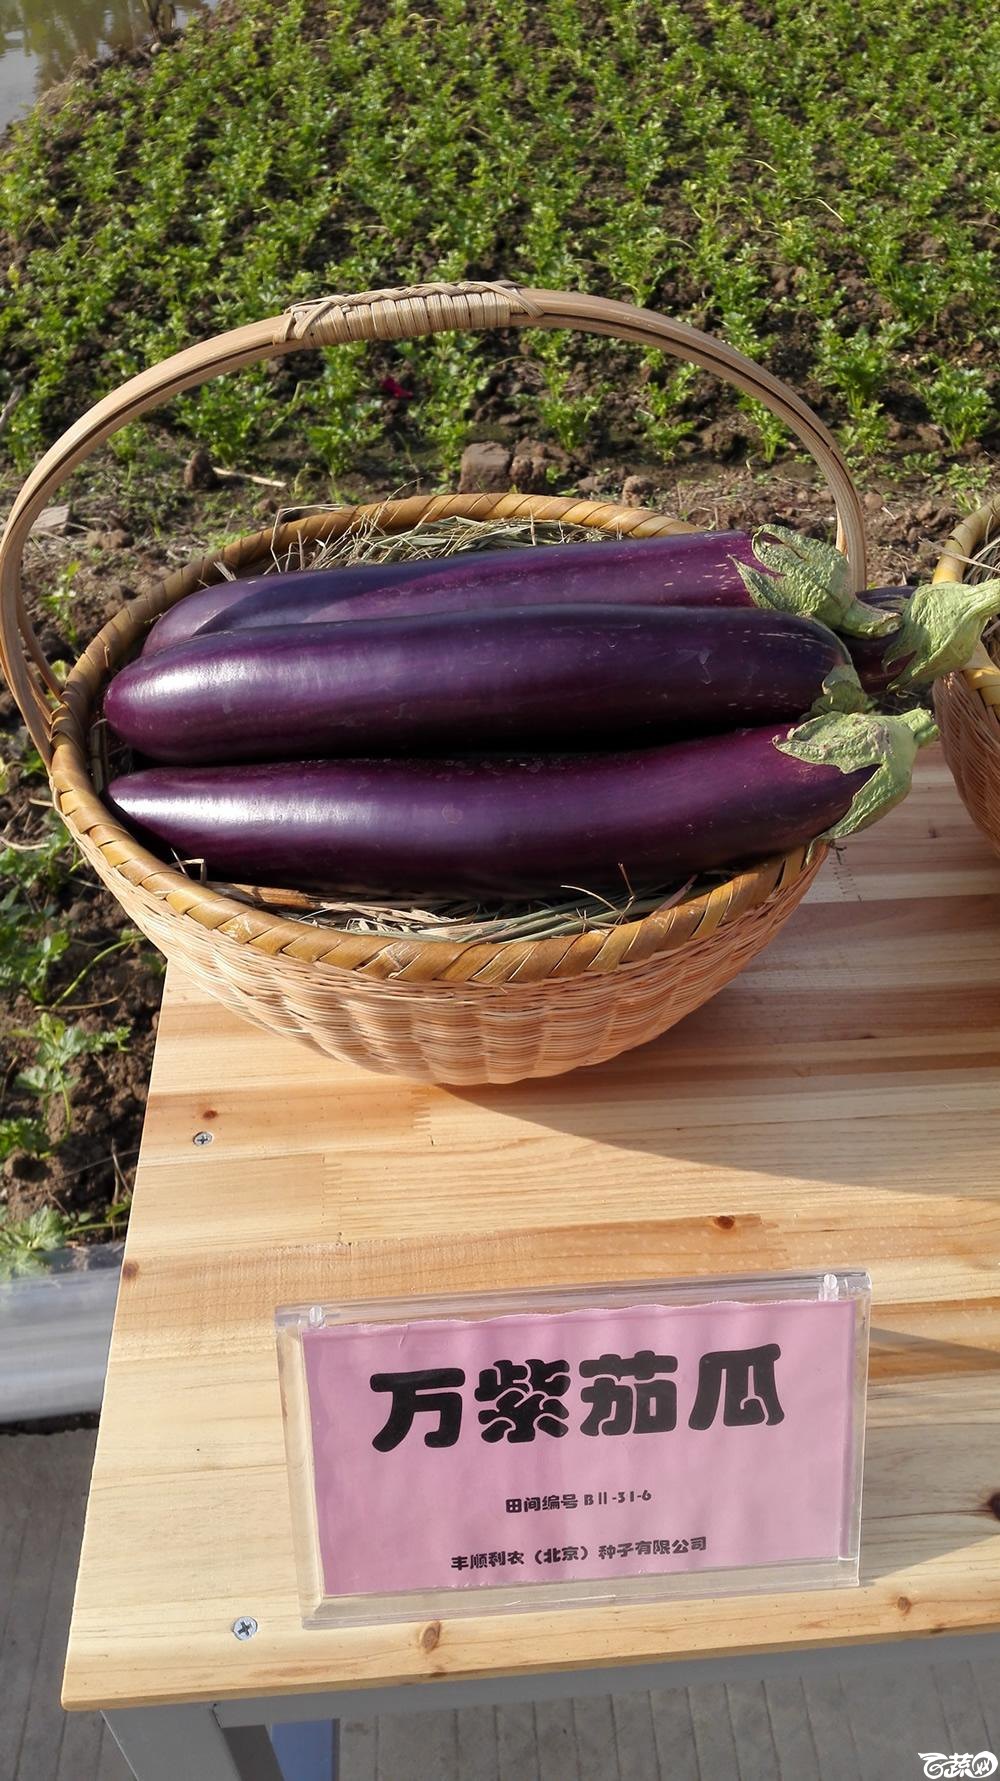 2014年12月10号广州市农科院南沙秋季蔬菜新品种展示会 茄子_005.jpg